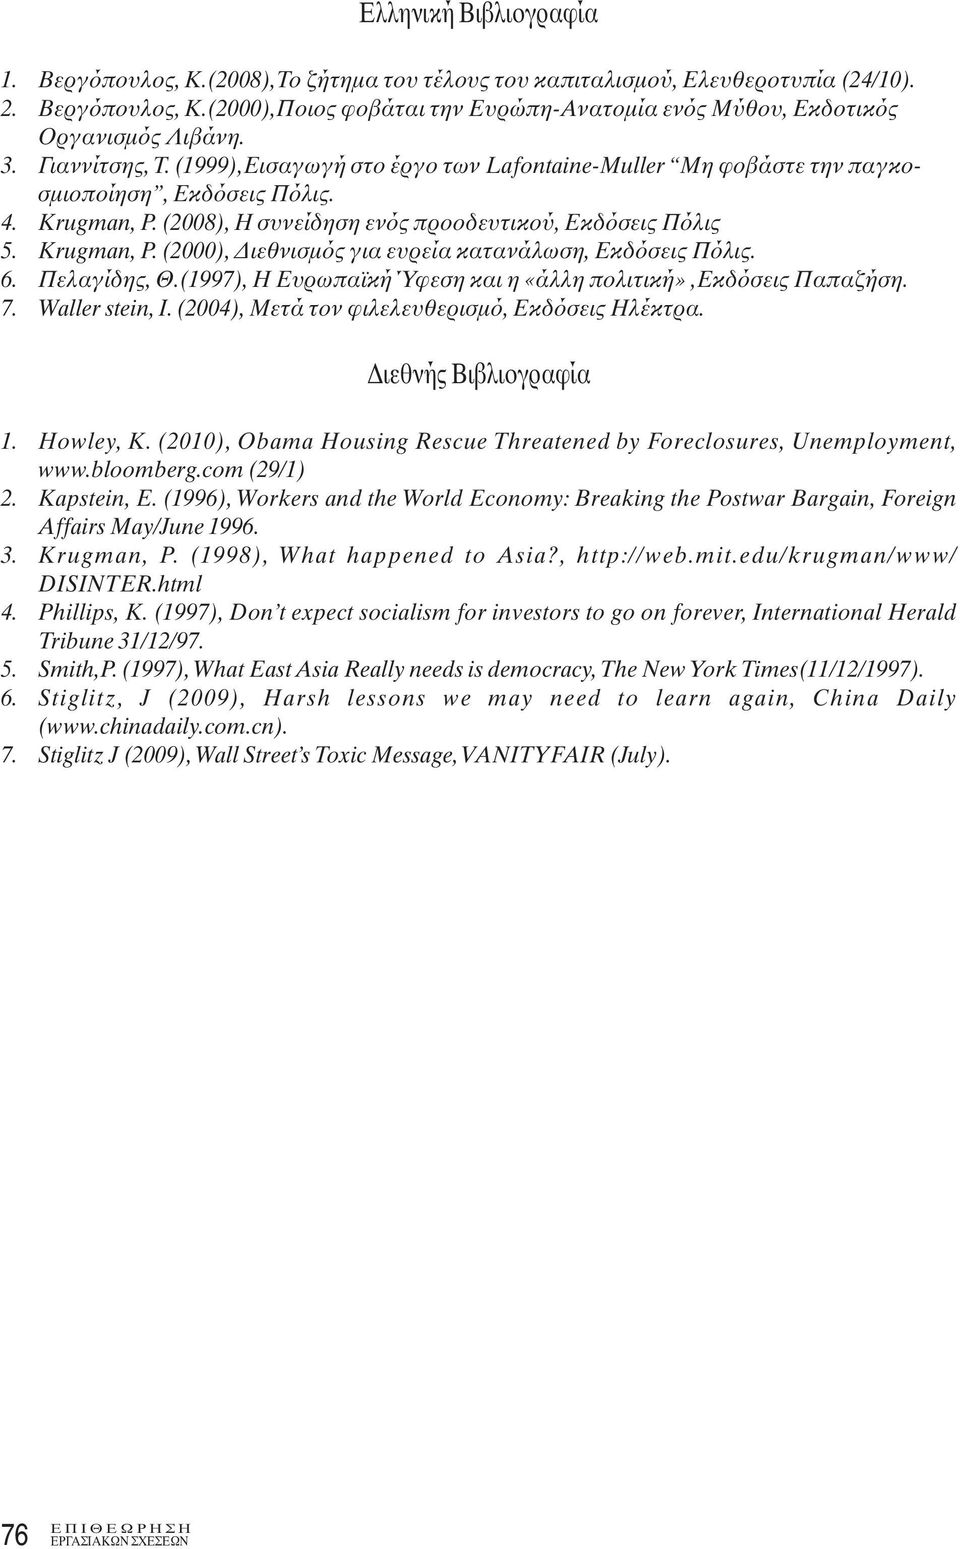 6. Πελαγίδης, Θ.(1997), Η Ευρωπαϊκή Ύφεση και η «άλλη πολιτική»,εκδόσεις Παπαζήση. 7. Waller stein, I. (2004), Μετά τον φιλελευθερισμό, Εκδόσεις Ηλέκτρα. Διεθνής Βιβλιογραφία 1. Howley, K.